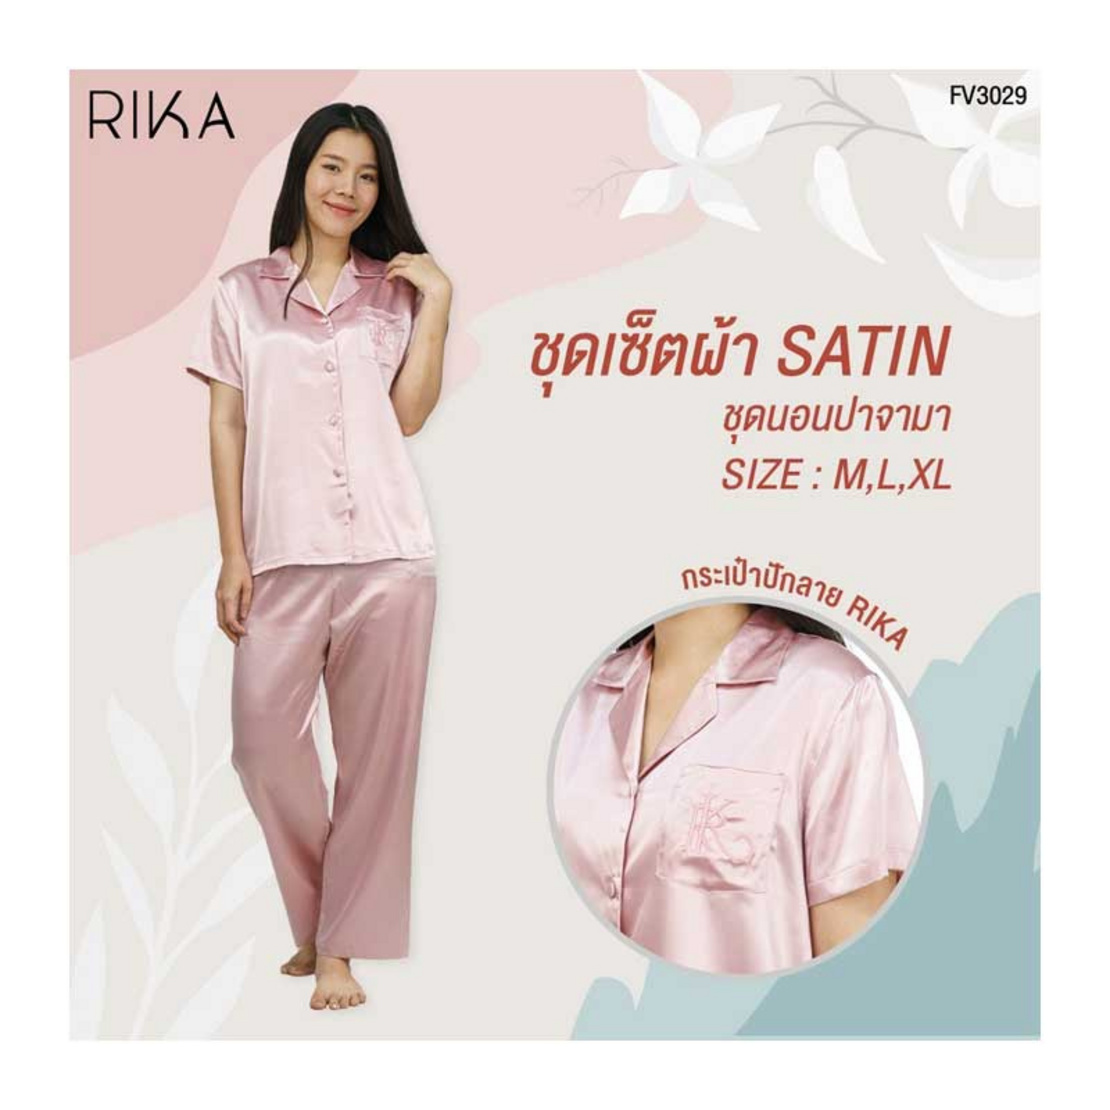 Rika ชุดนอน ปาจามา Satin ผ้าซาติน เนื้อนุ่ม (เสื้อ+กางเกงขายาว) Fv3029 |  Allonline